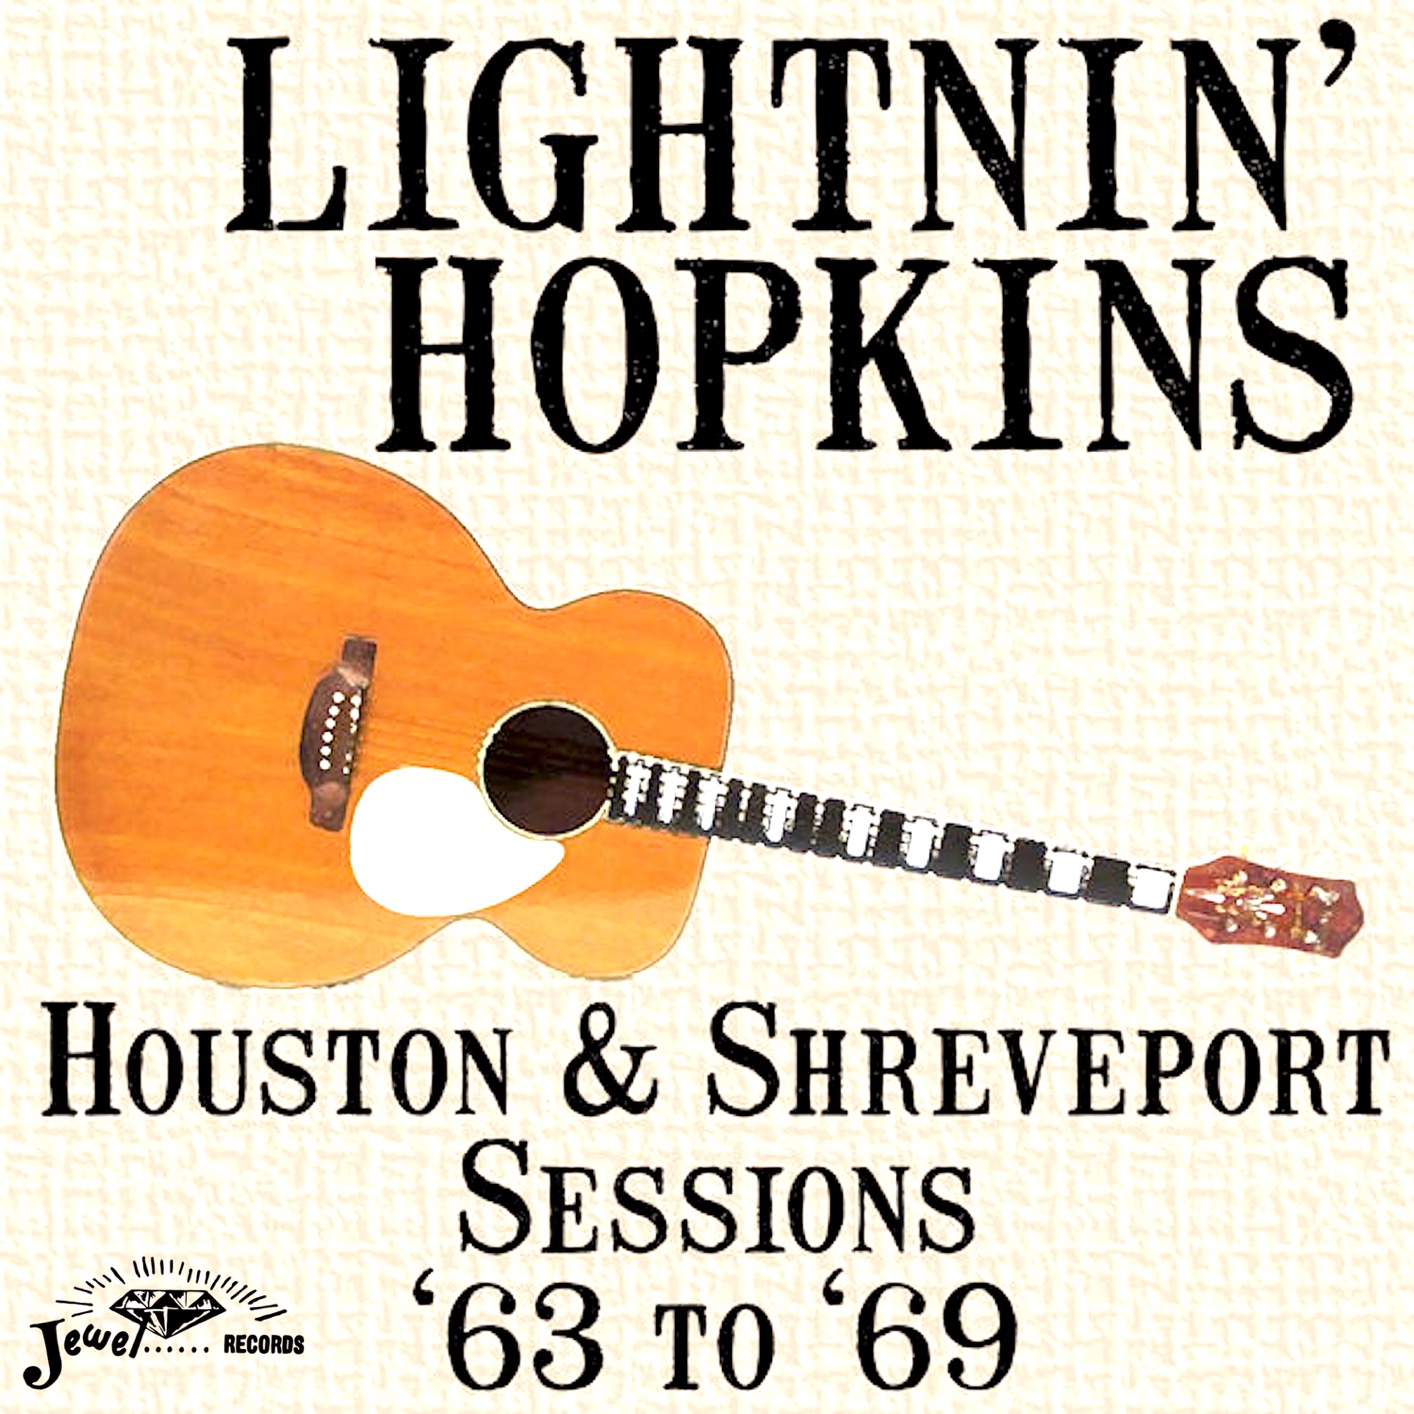 Lightnin’ Hopkins - Houston & Shreveport Sessions ’63 to ’69 (1969/2019) [FLAC 24bit/44,1kHz]